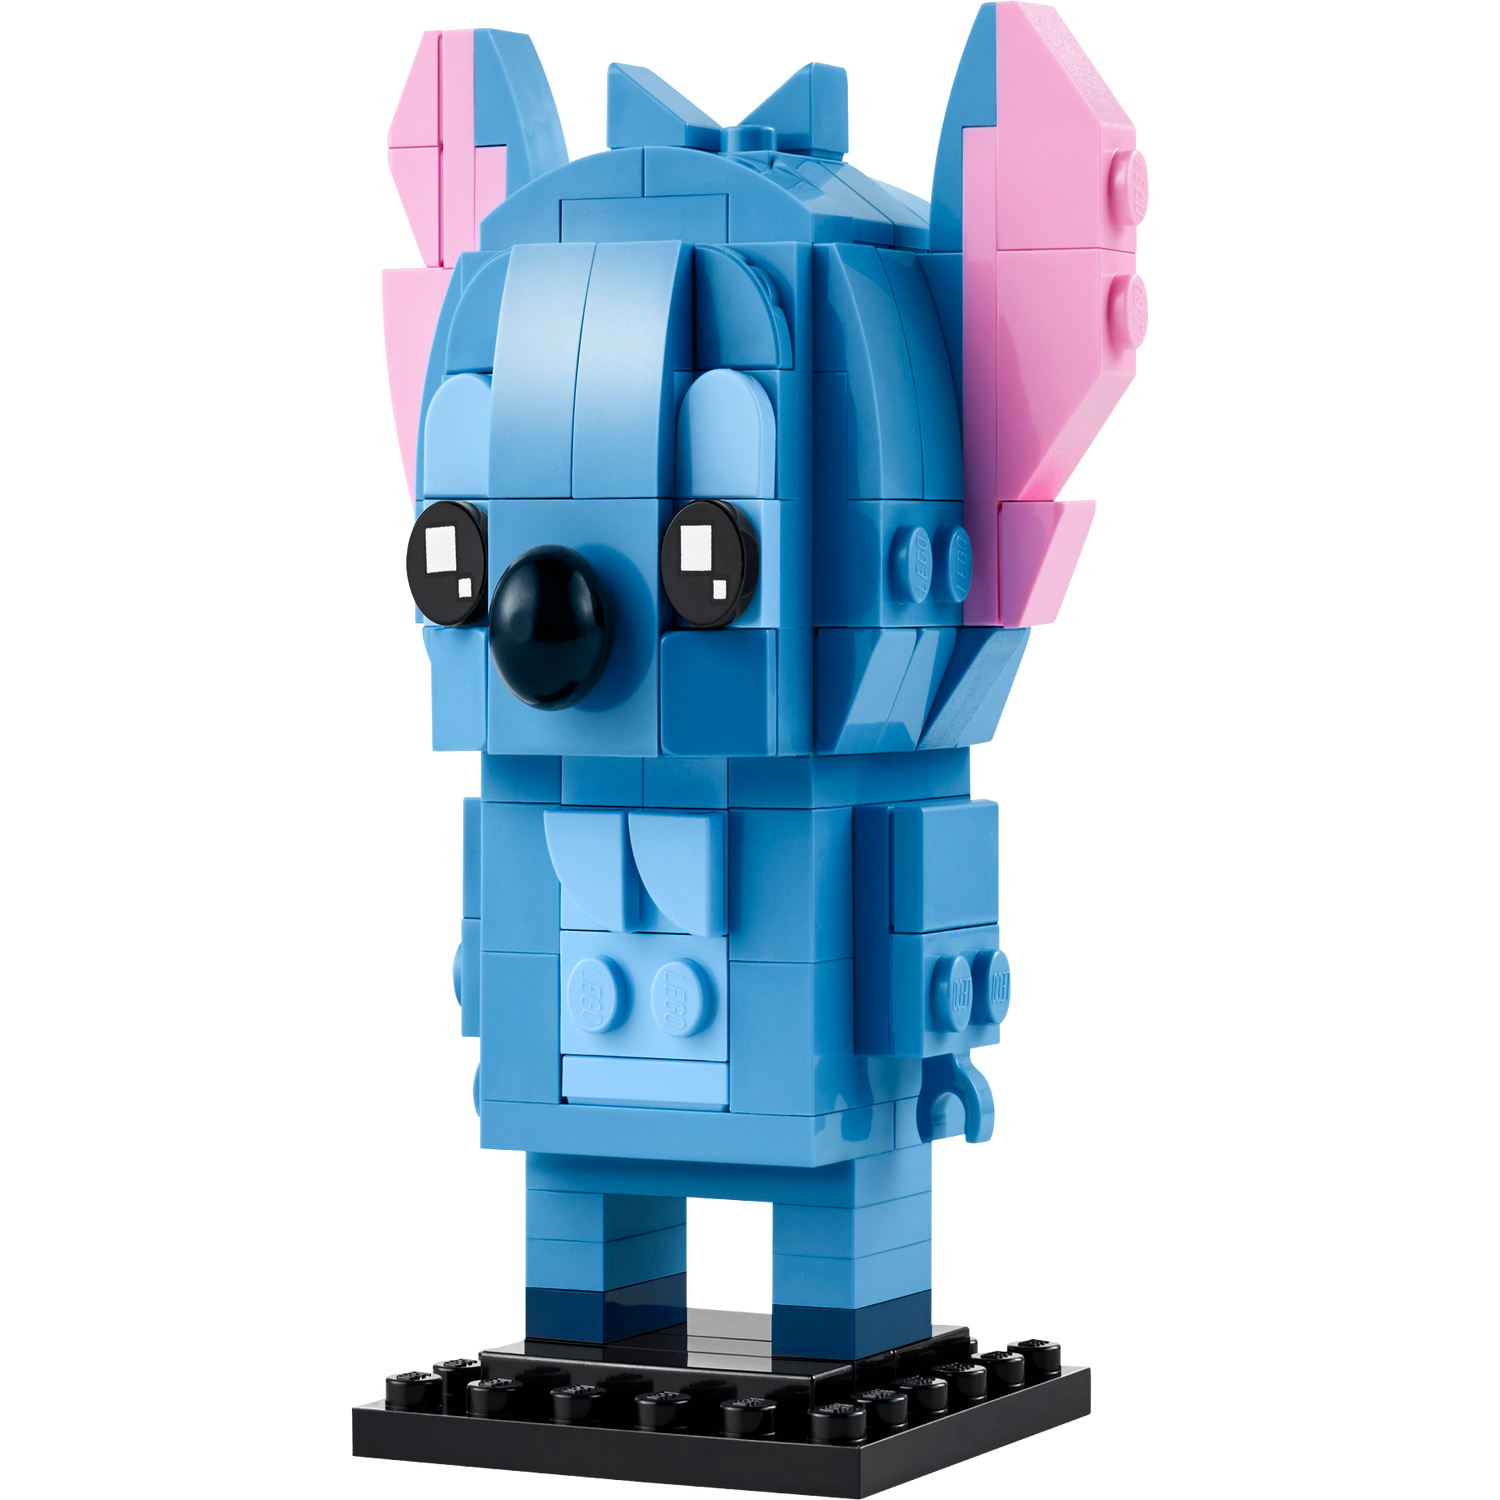 LEGO IDEAS - BrickHeadz Stitch!